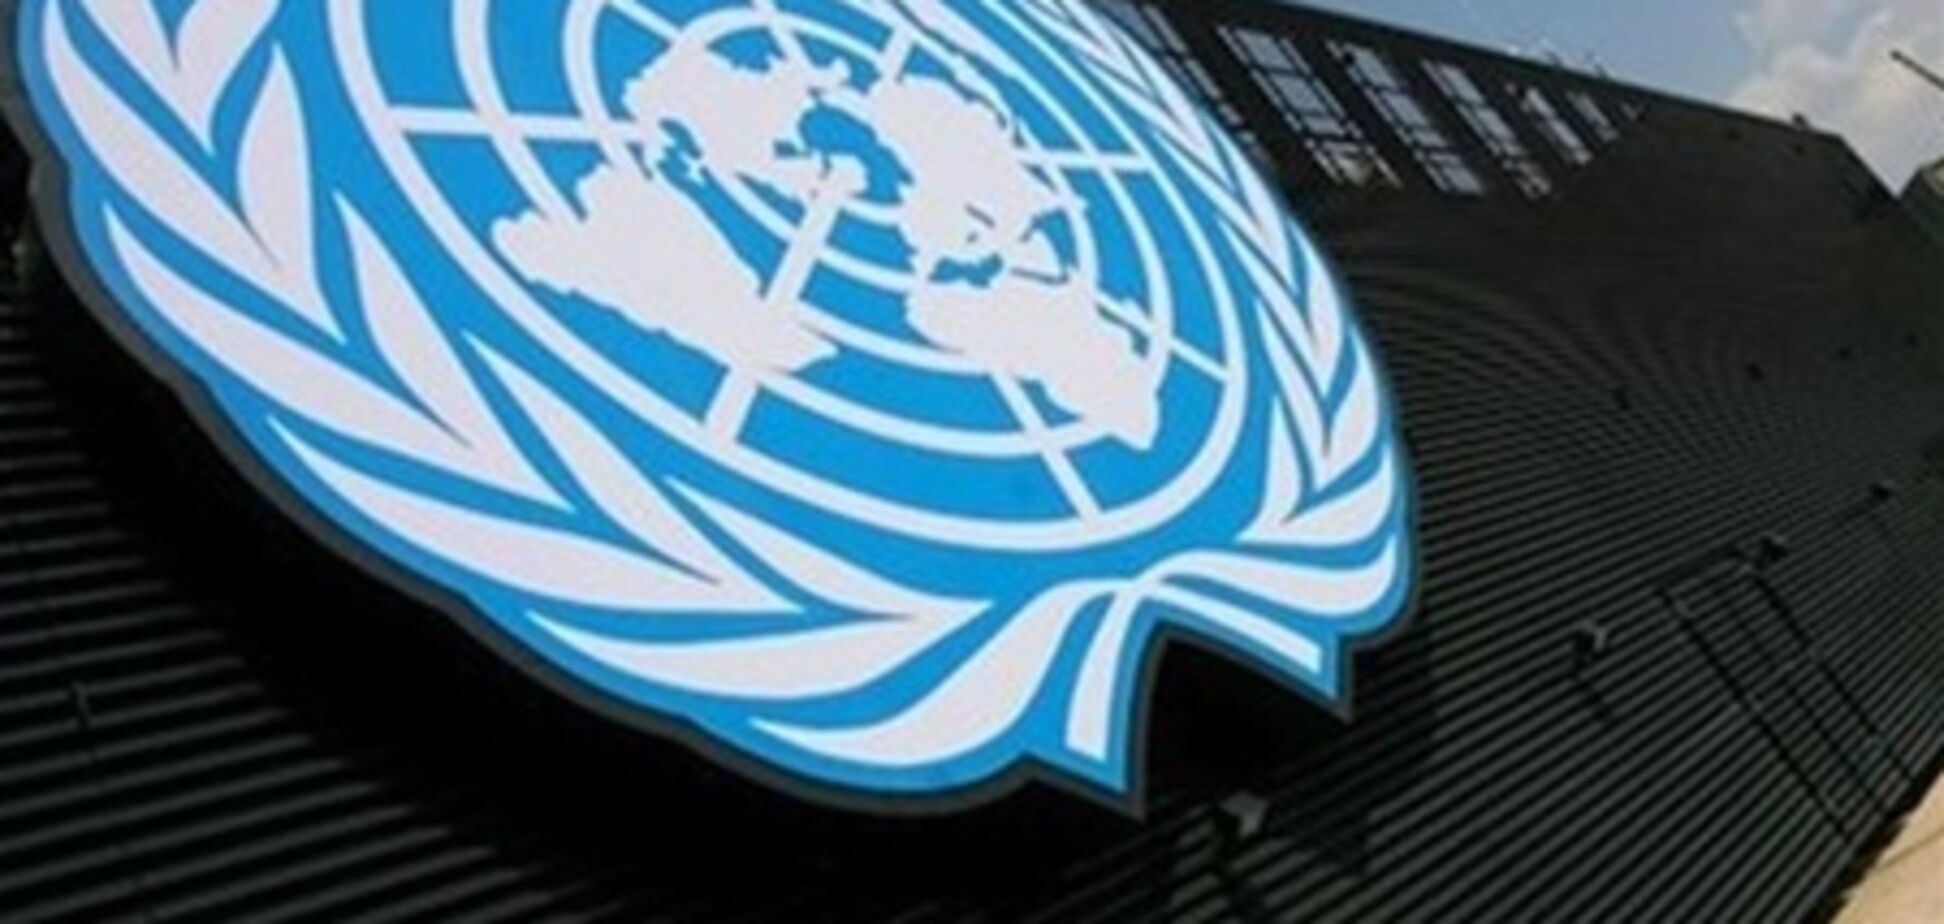 Рост мировой экономики в 2013 г составит 2,3% - ООН